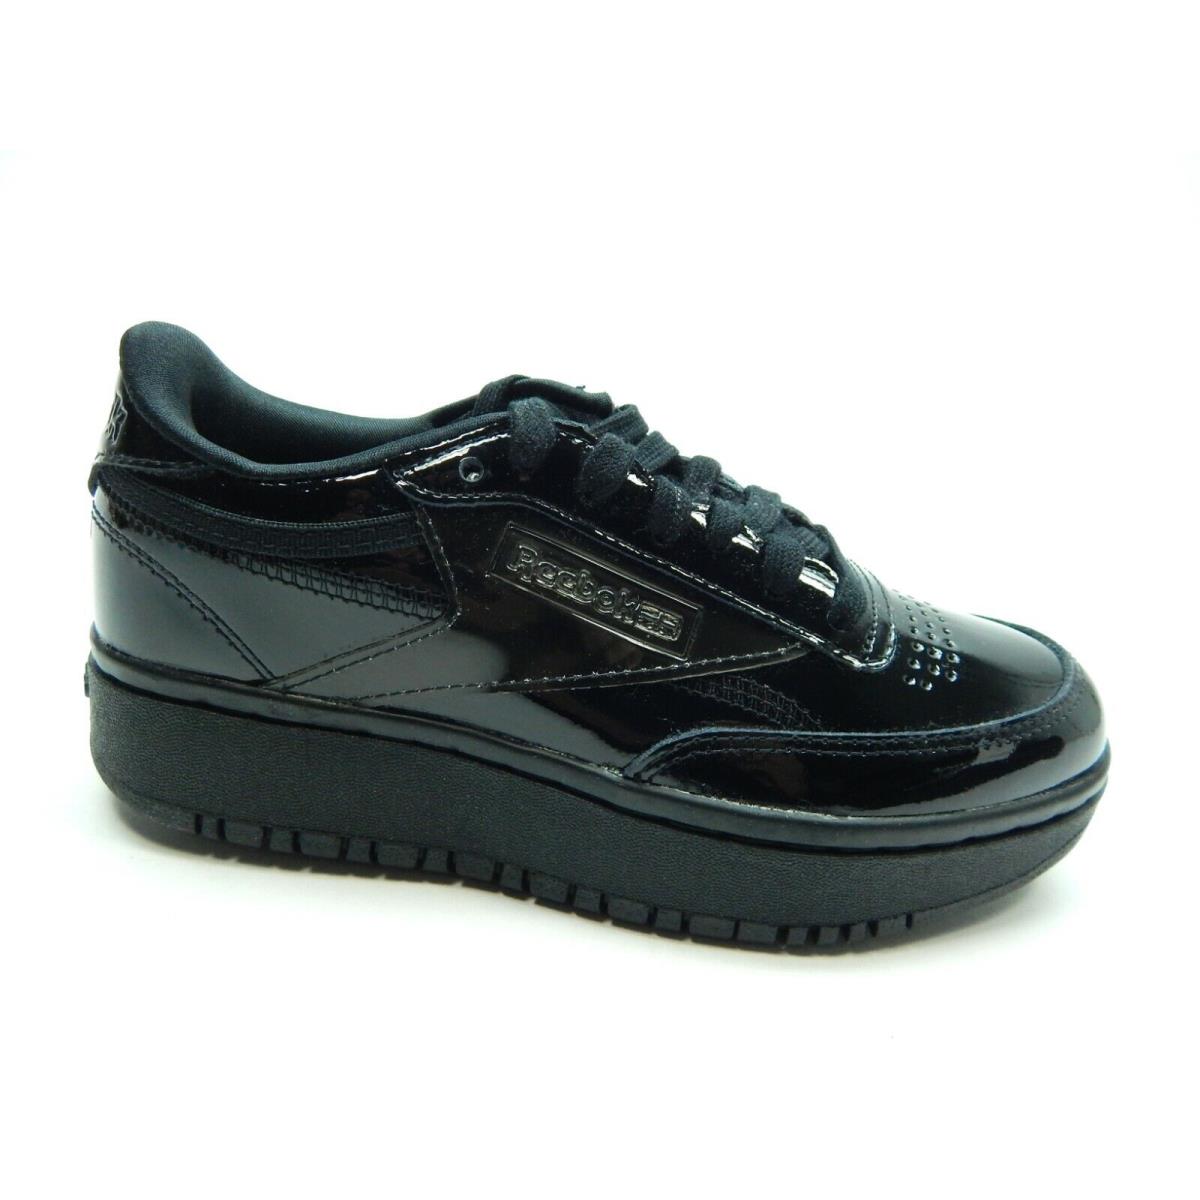 Reebok Club C Double Black H02565 Women Shoes Size 7